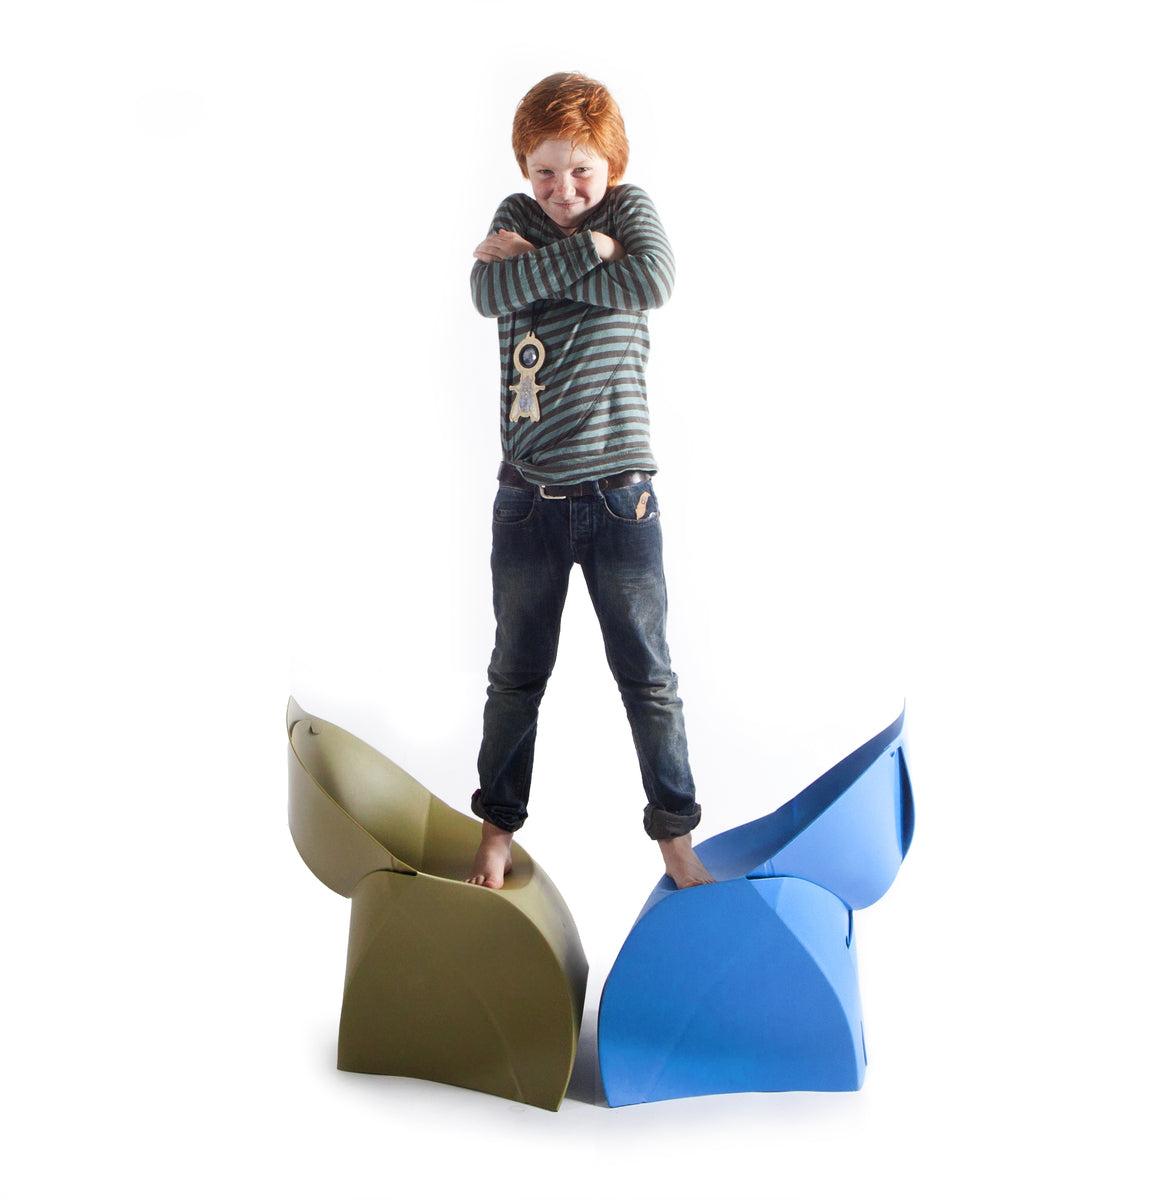 Flux Chair Junior opvouwbare design kinderstoel geel (4 stuks)